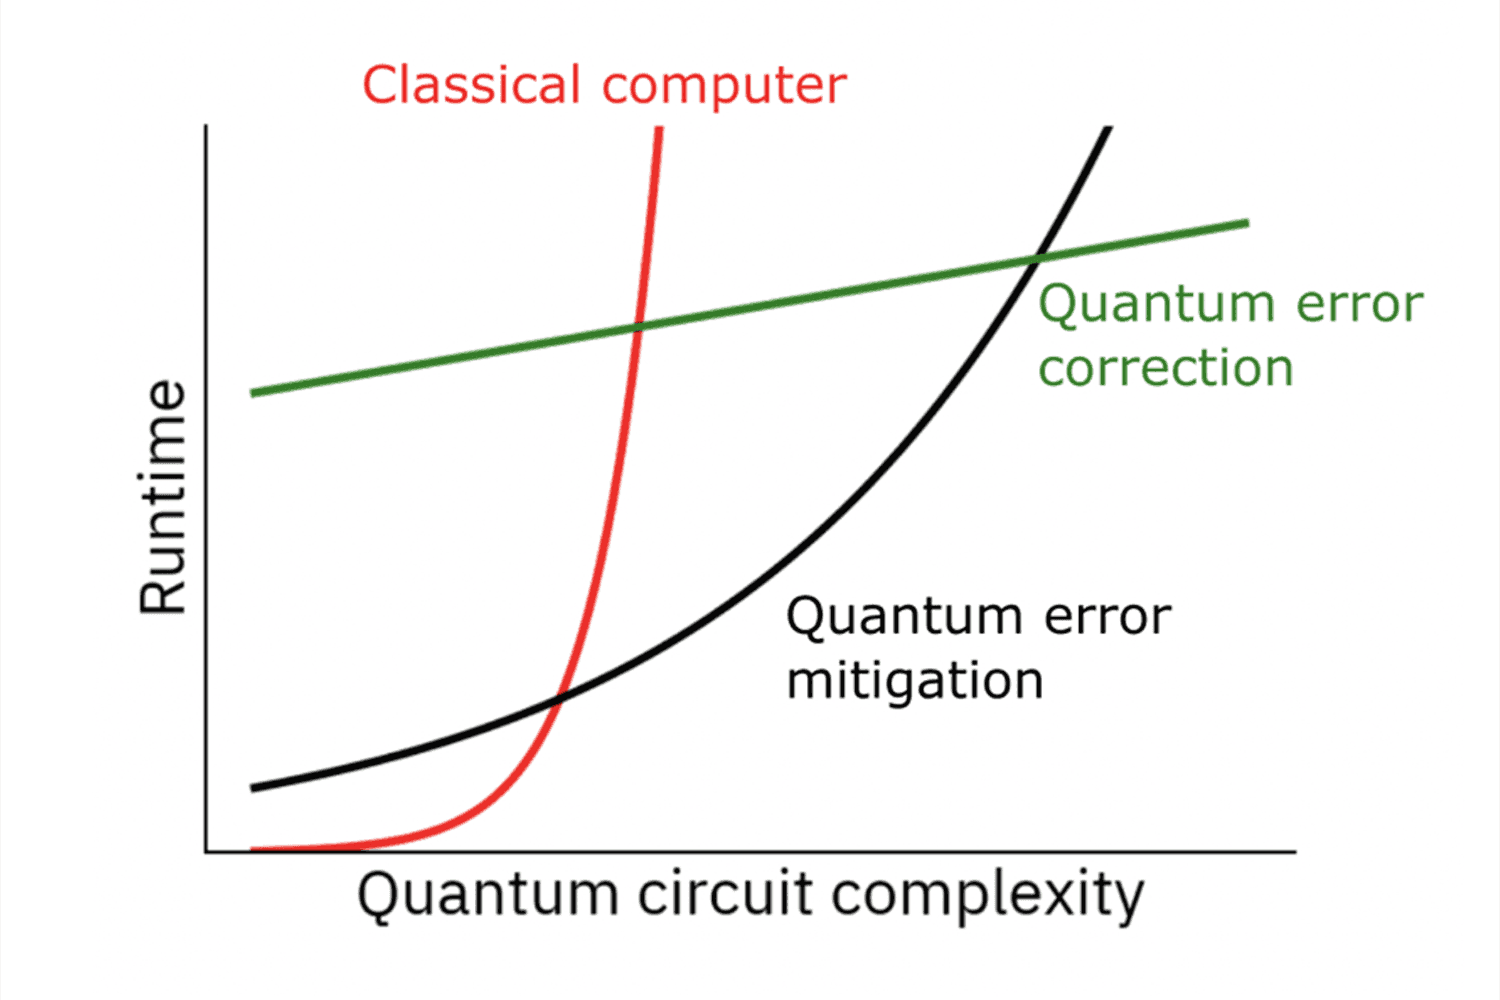 Quantum circuit complexity